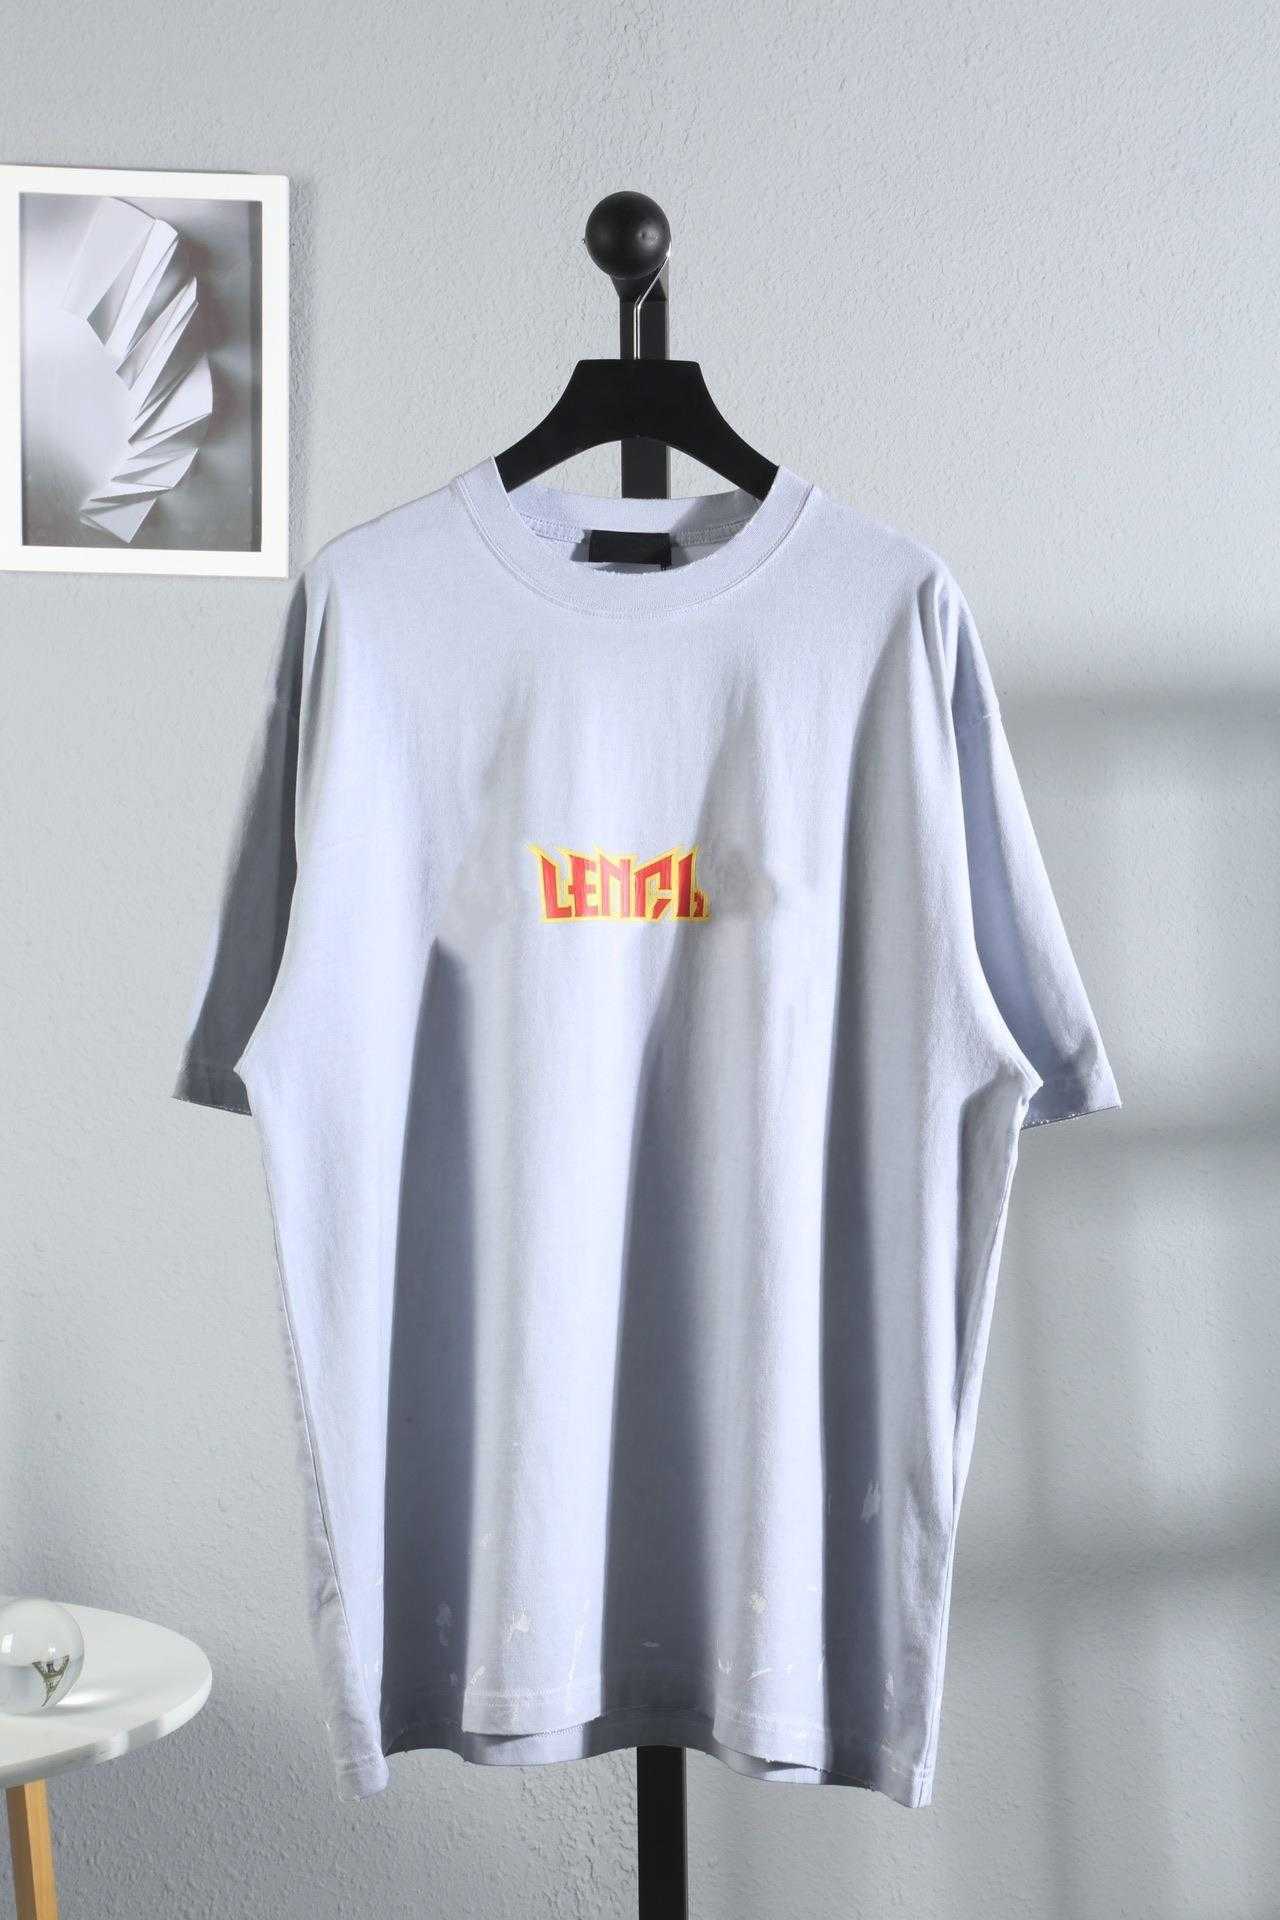 Designer T -Shirt -Shirt High Version Familys Blitzbuchstaben Ärmeln Waschlöcher Abrieblöcher Inkjet -Prozess Tränengummi Druck